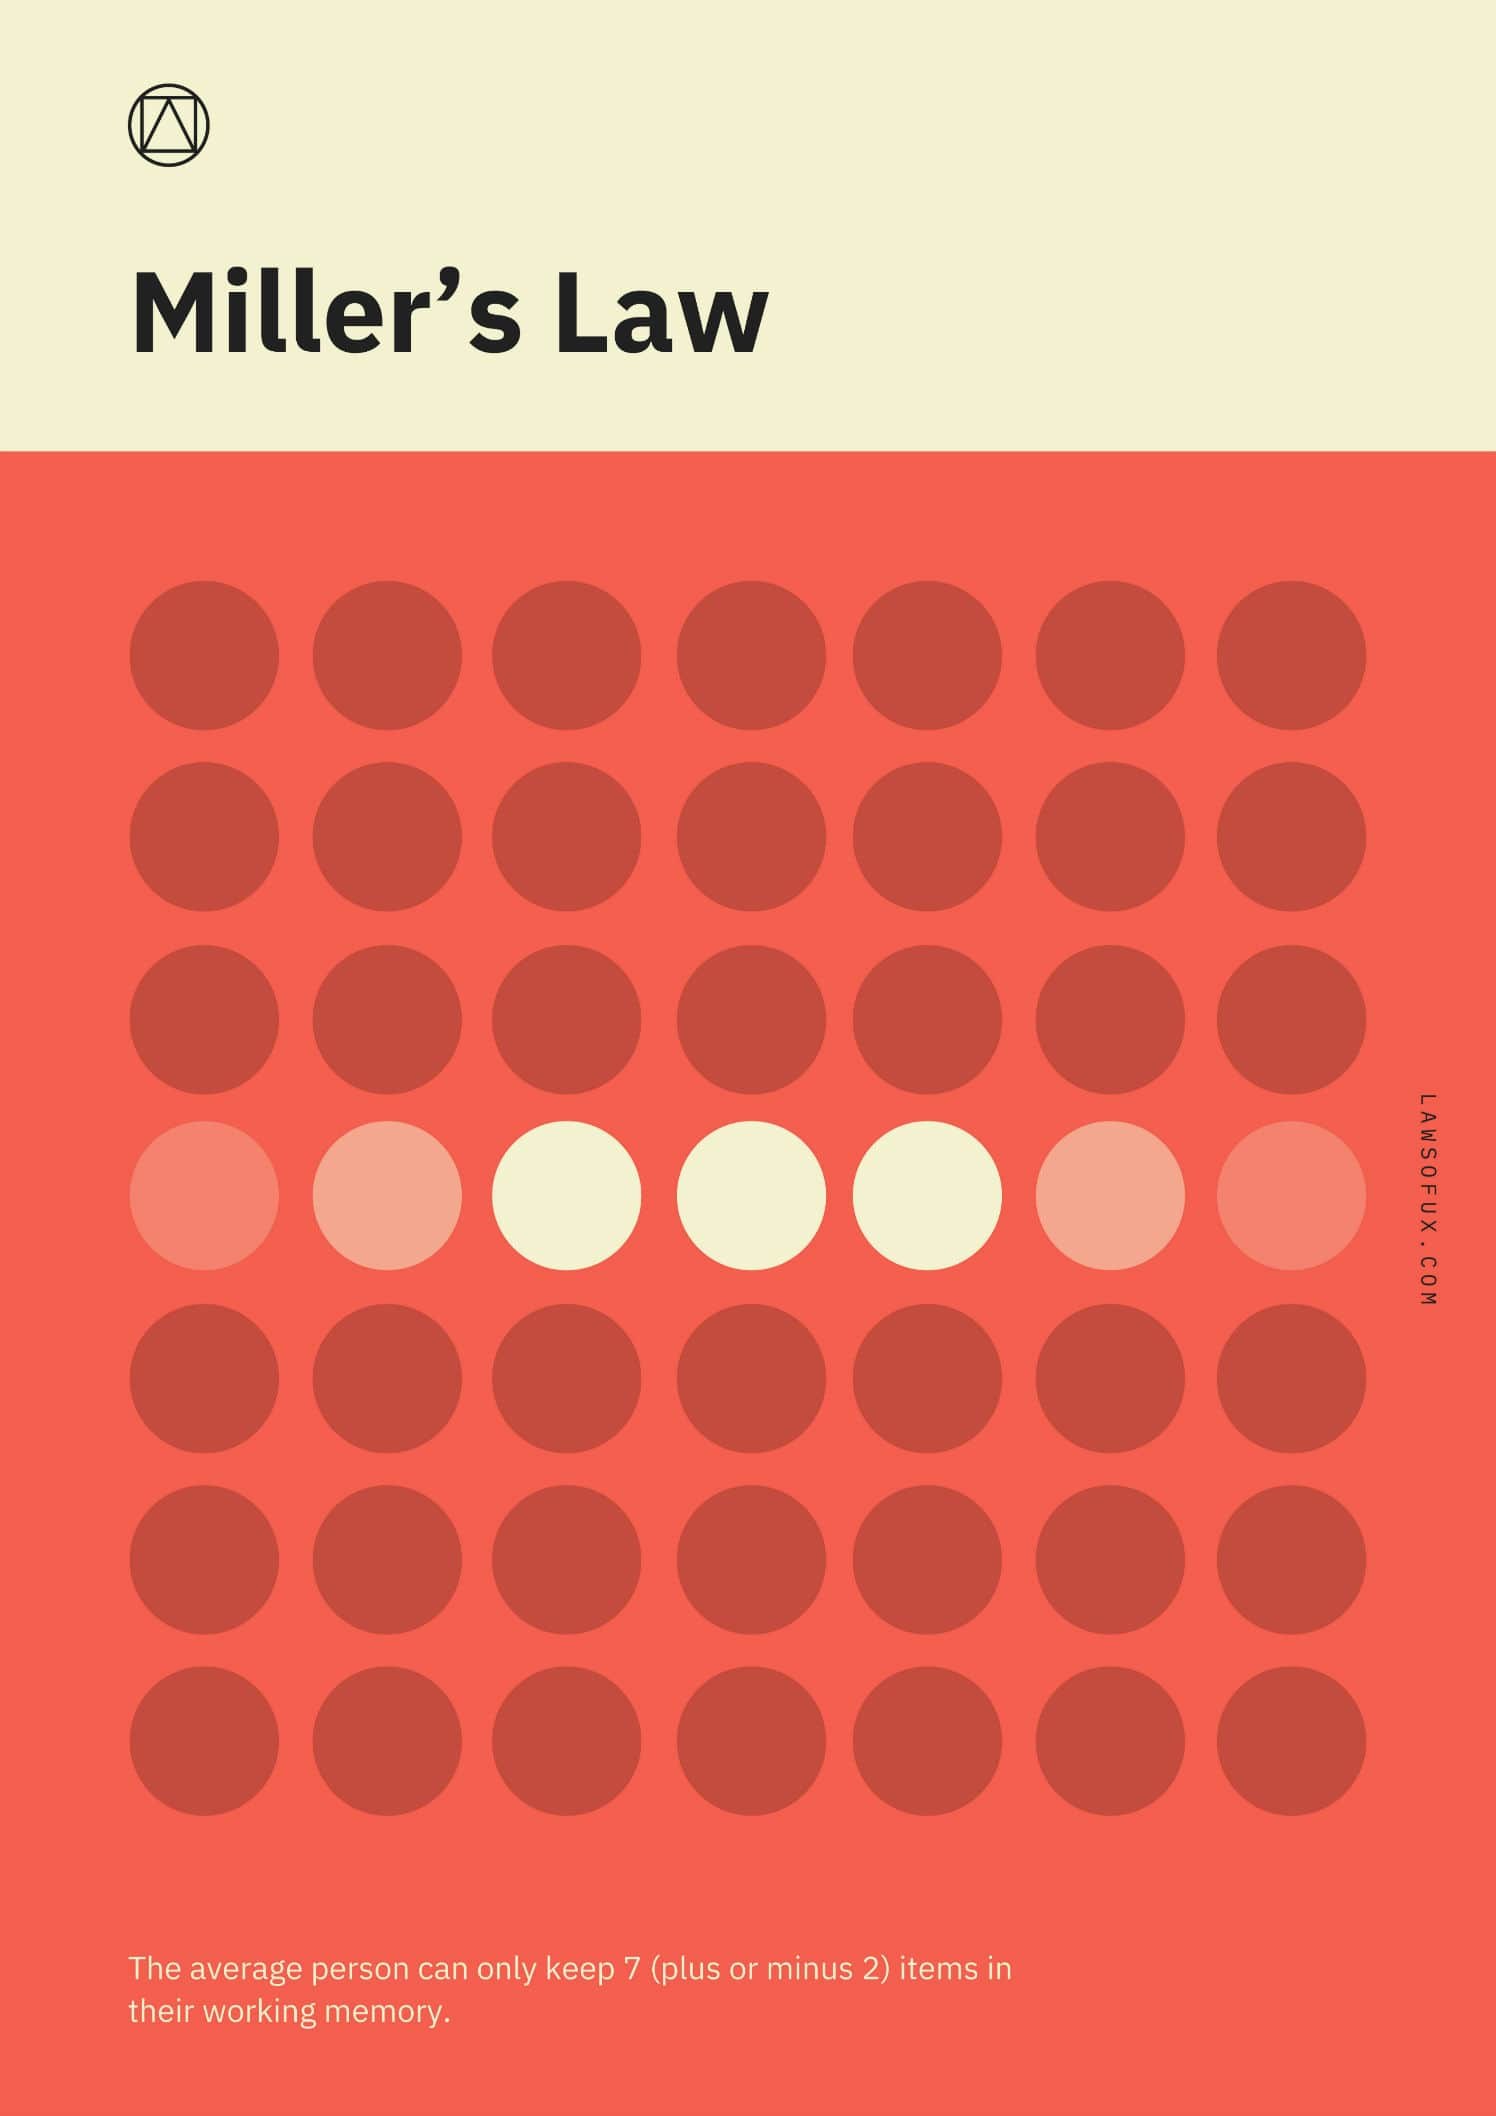 Закон миллера. Законы дизайна. Законы UX. Законы UX дизайна Яблонски. UX закон Миллера.